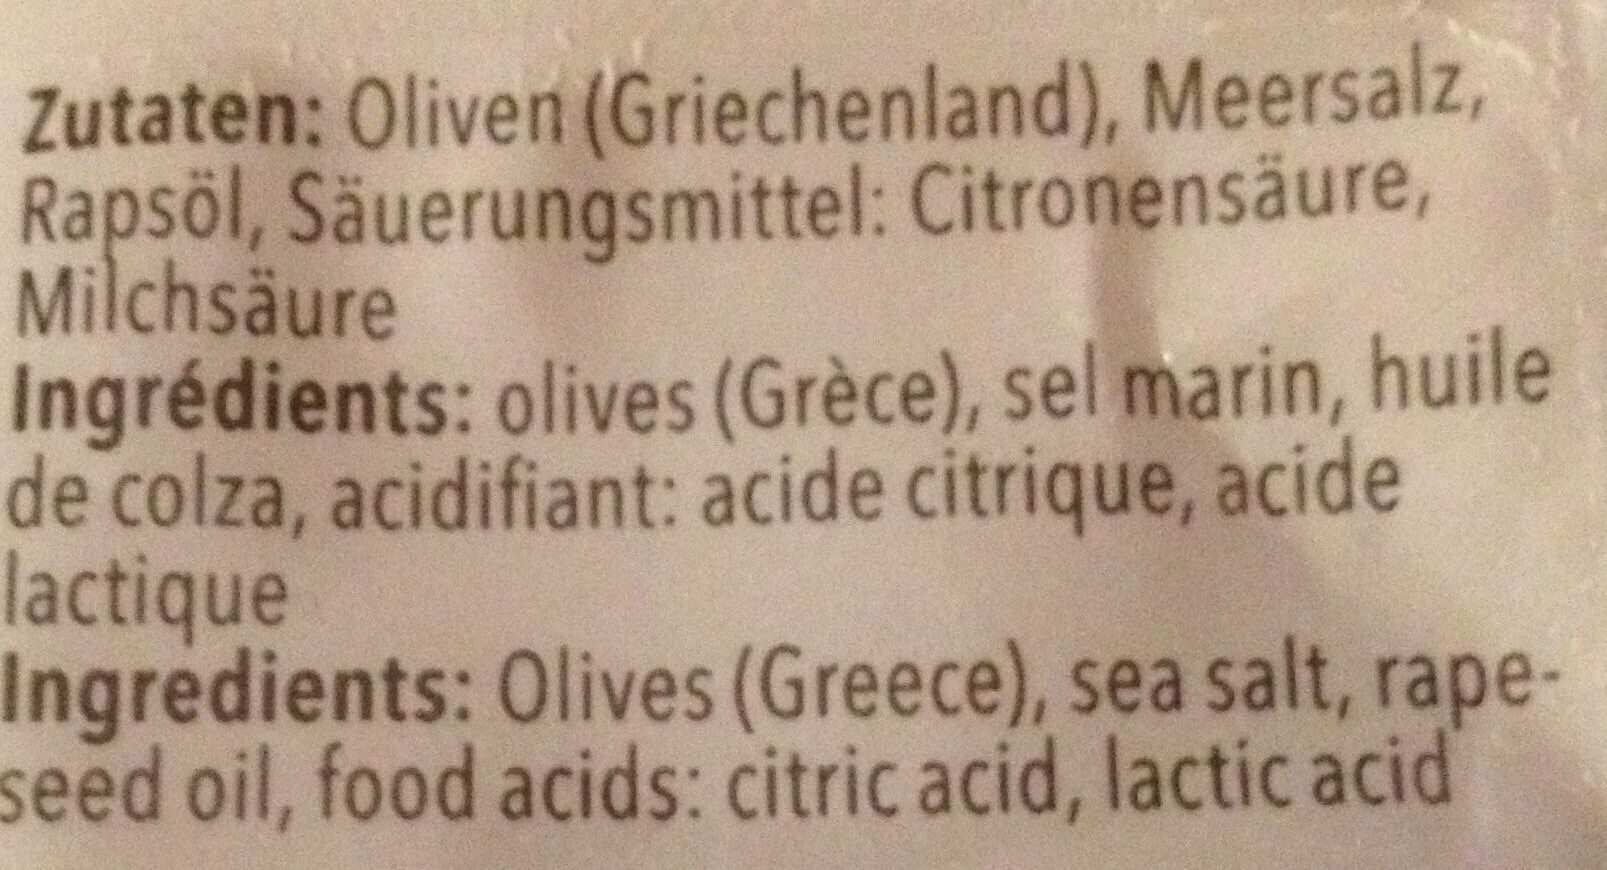 Chalkidiki olives greques - Ingredients - fr